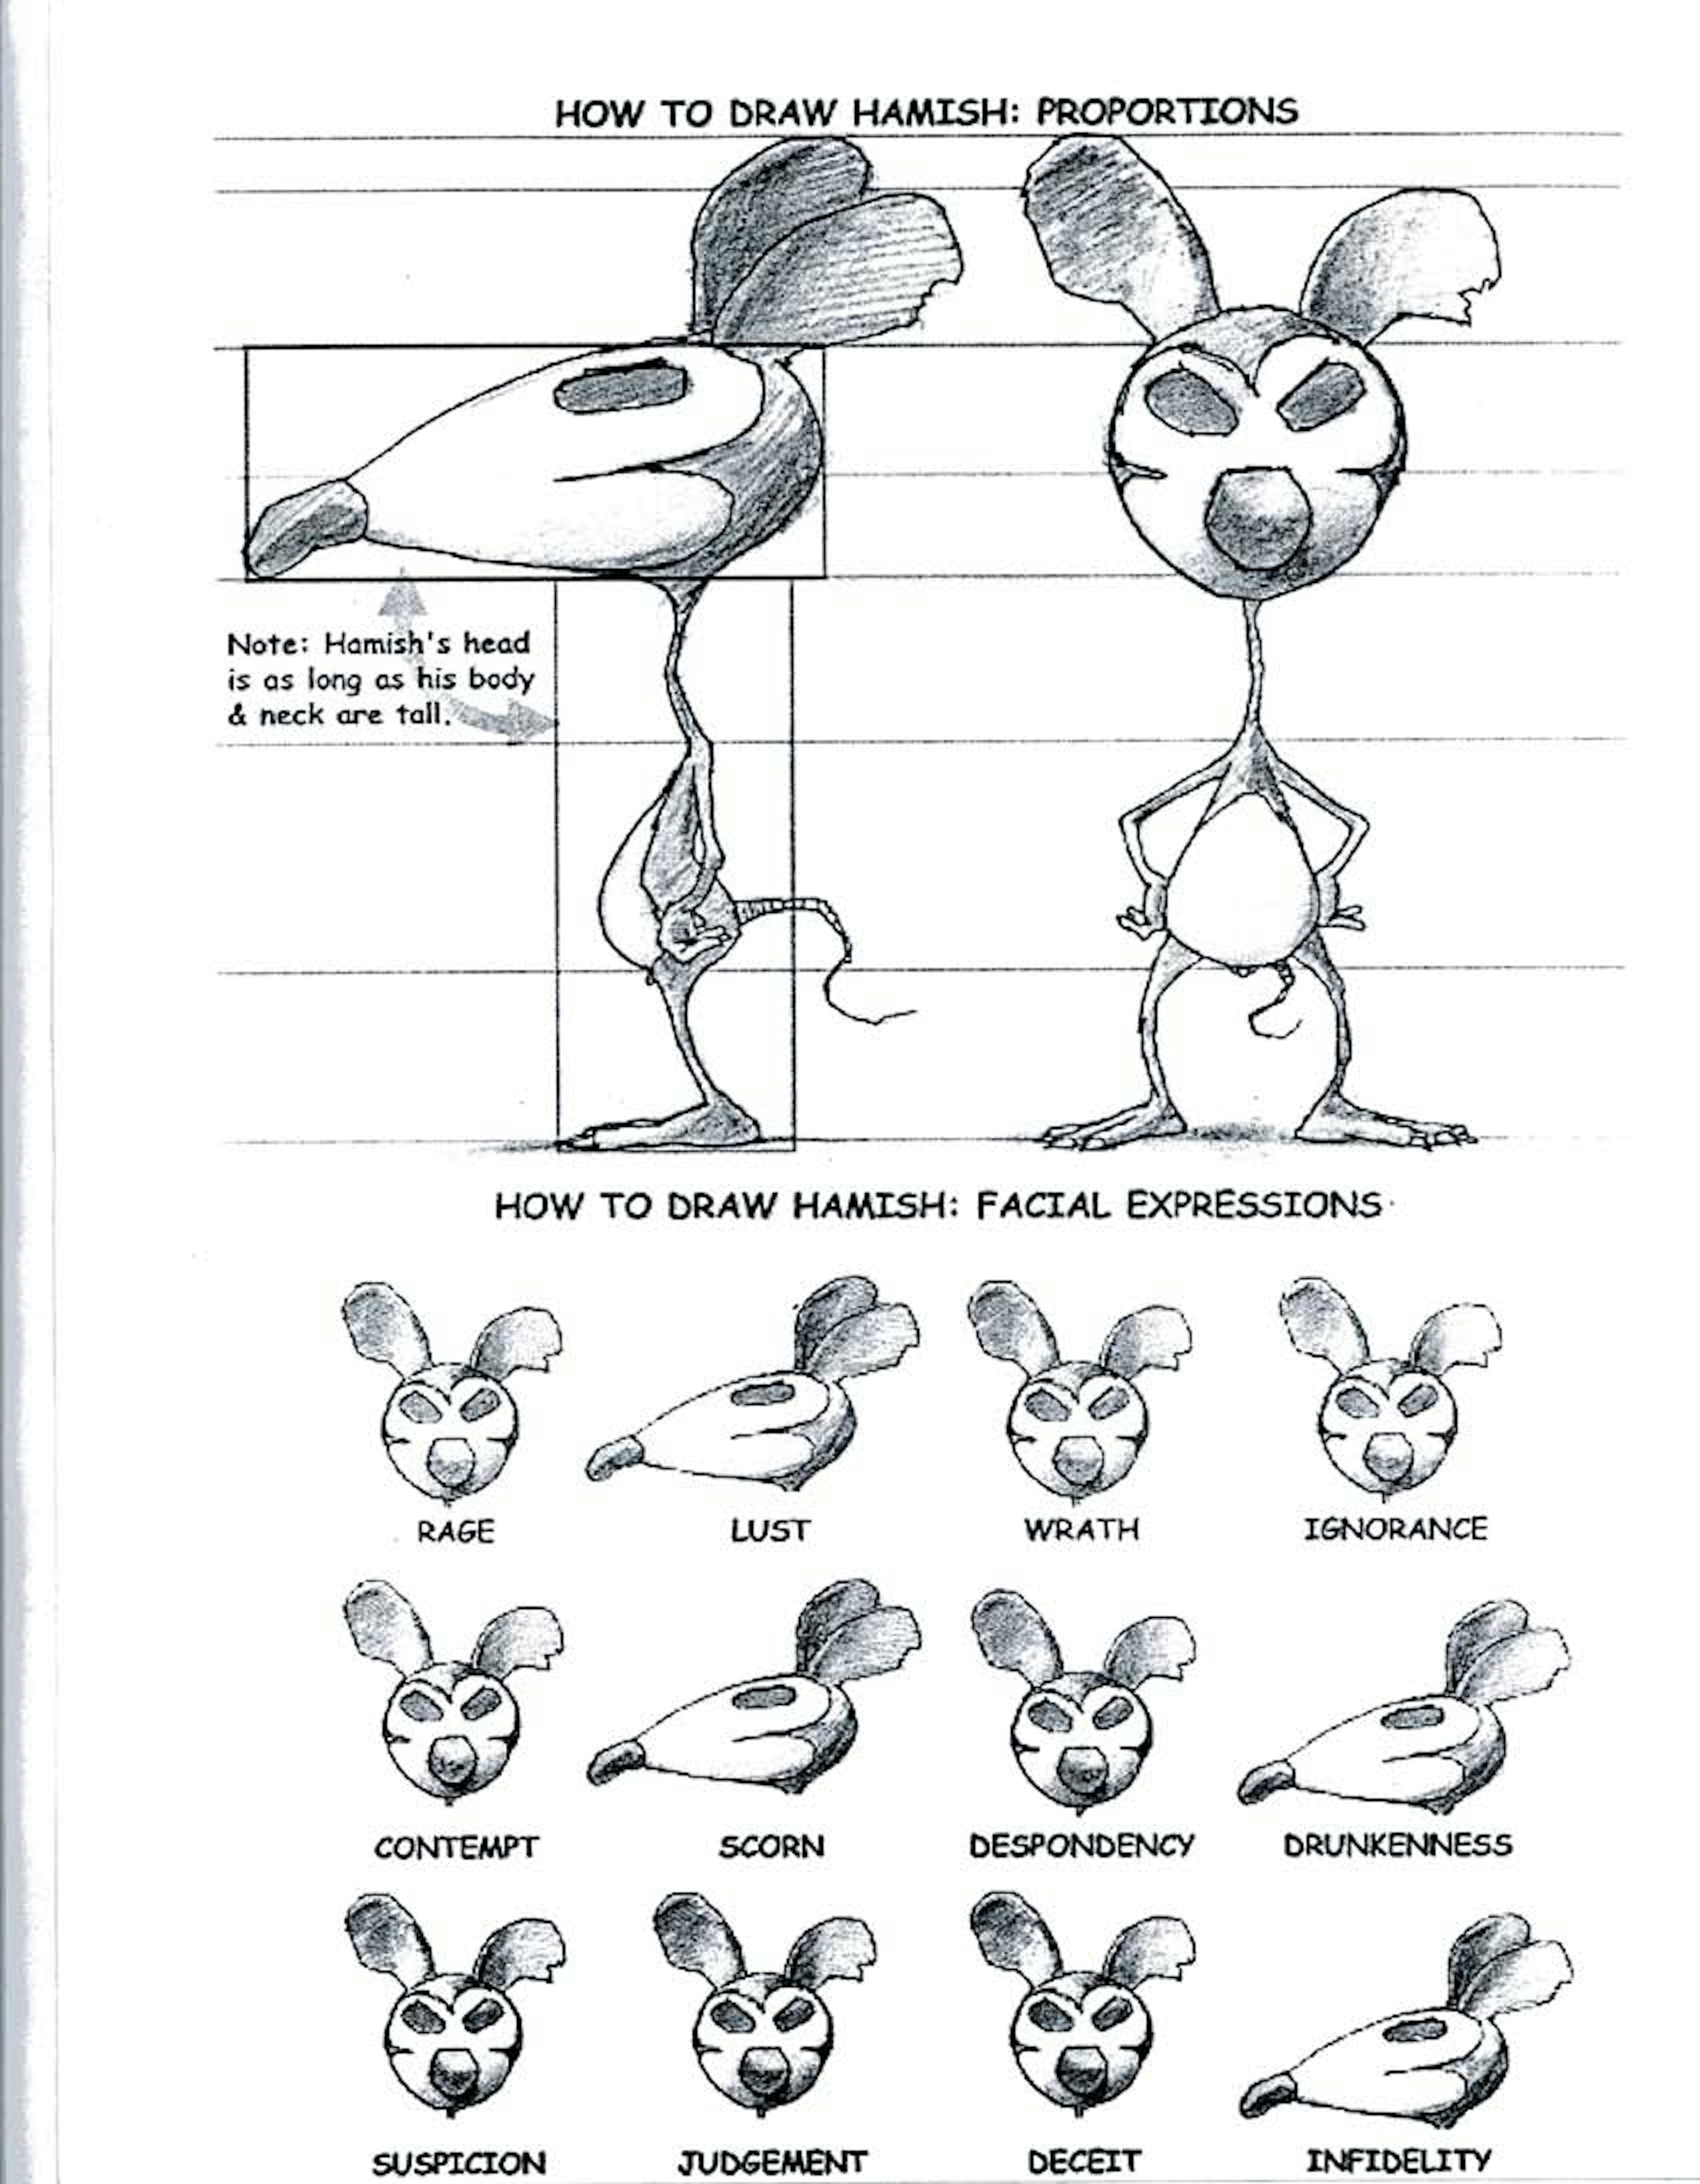 Hamish D. Rat's character sheet

